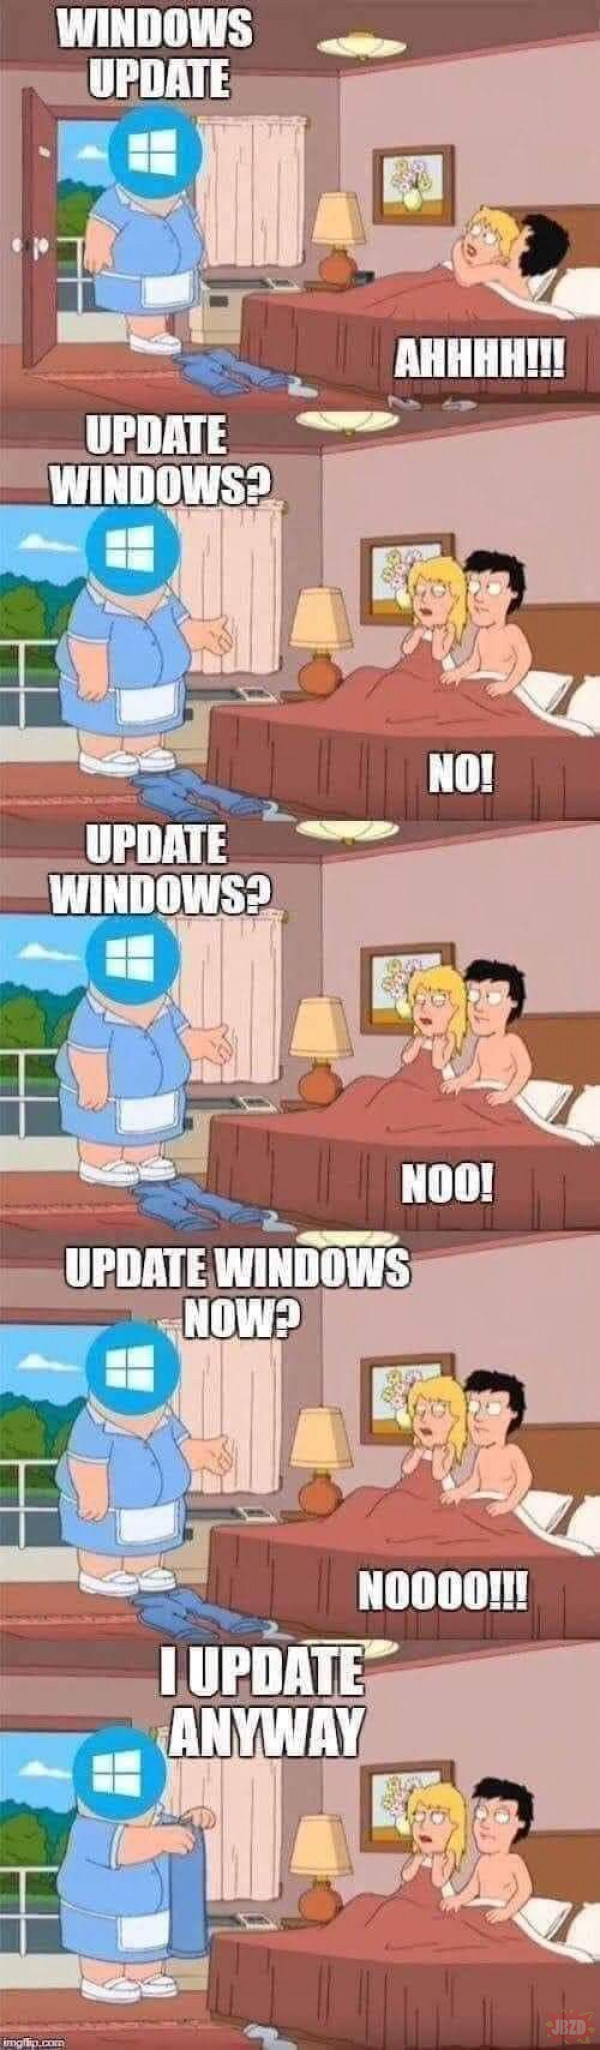 Windows update zawsze.